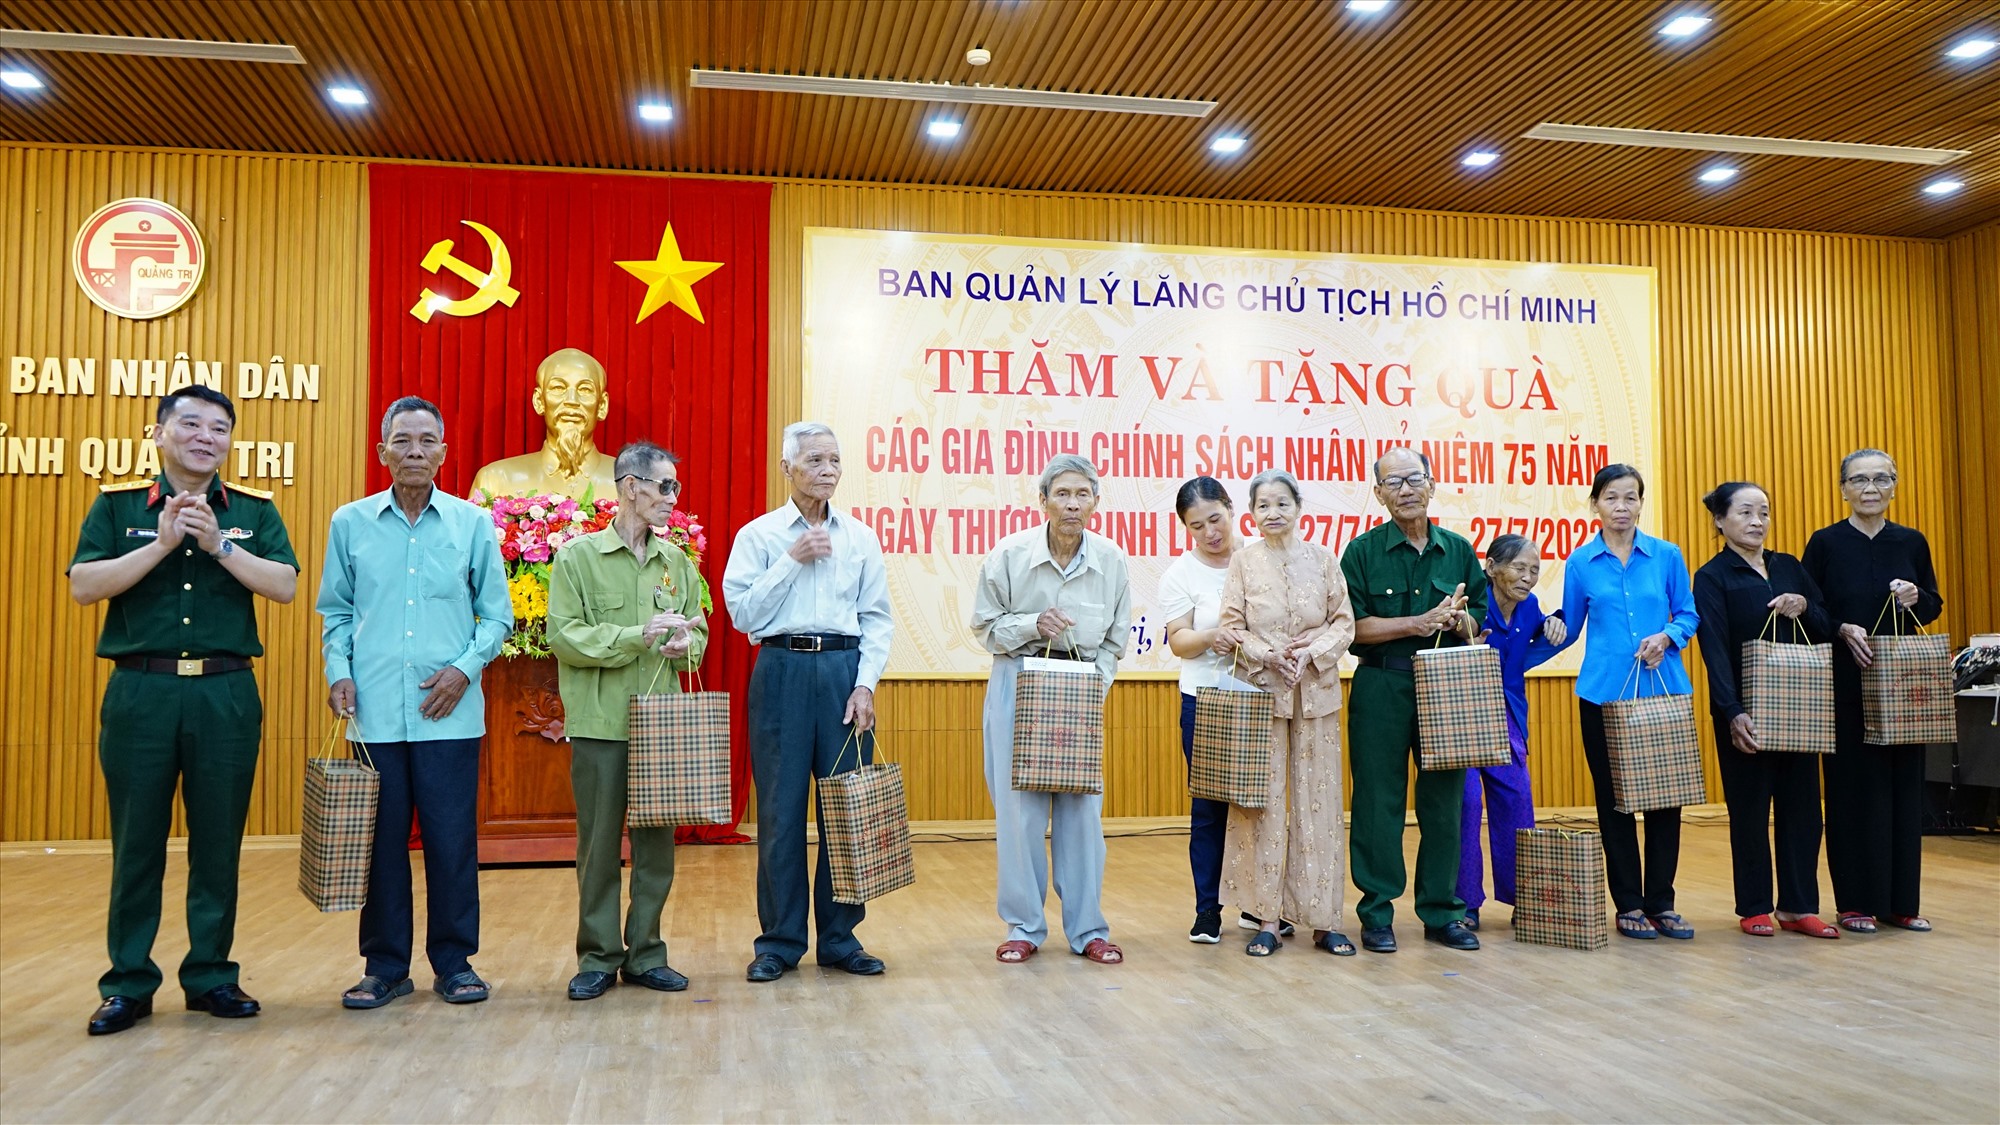 Đại tá Phạm Văn Hiếu, Phó Chính ủy Bộ Tư lệnh bảo vệ Lăng Chủ tịch Hồ Chí Minh tặng quà cho các gia đình chính sách - Ảnh: L.A